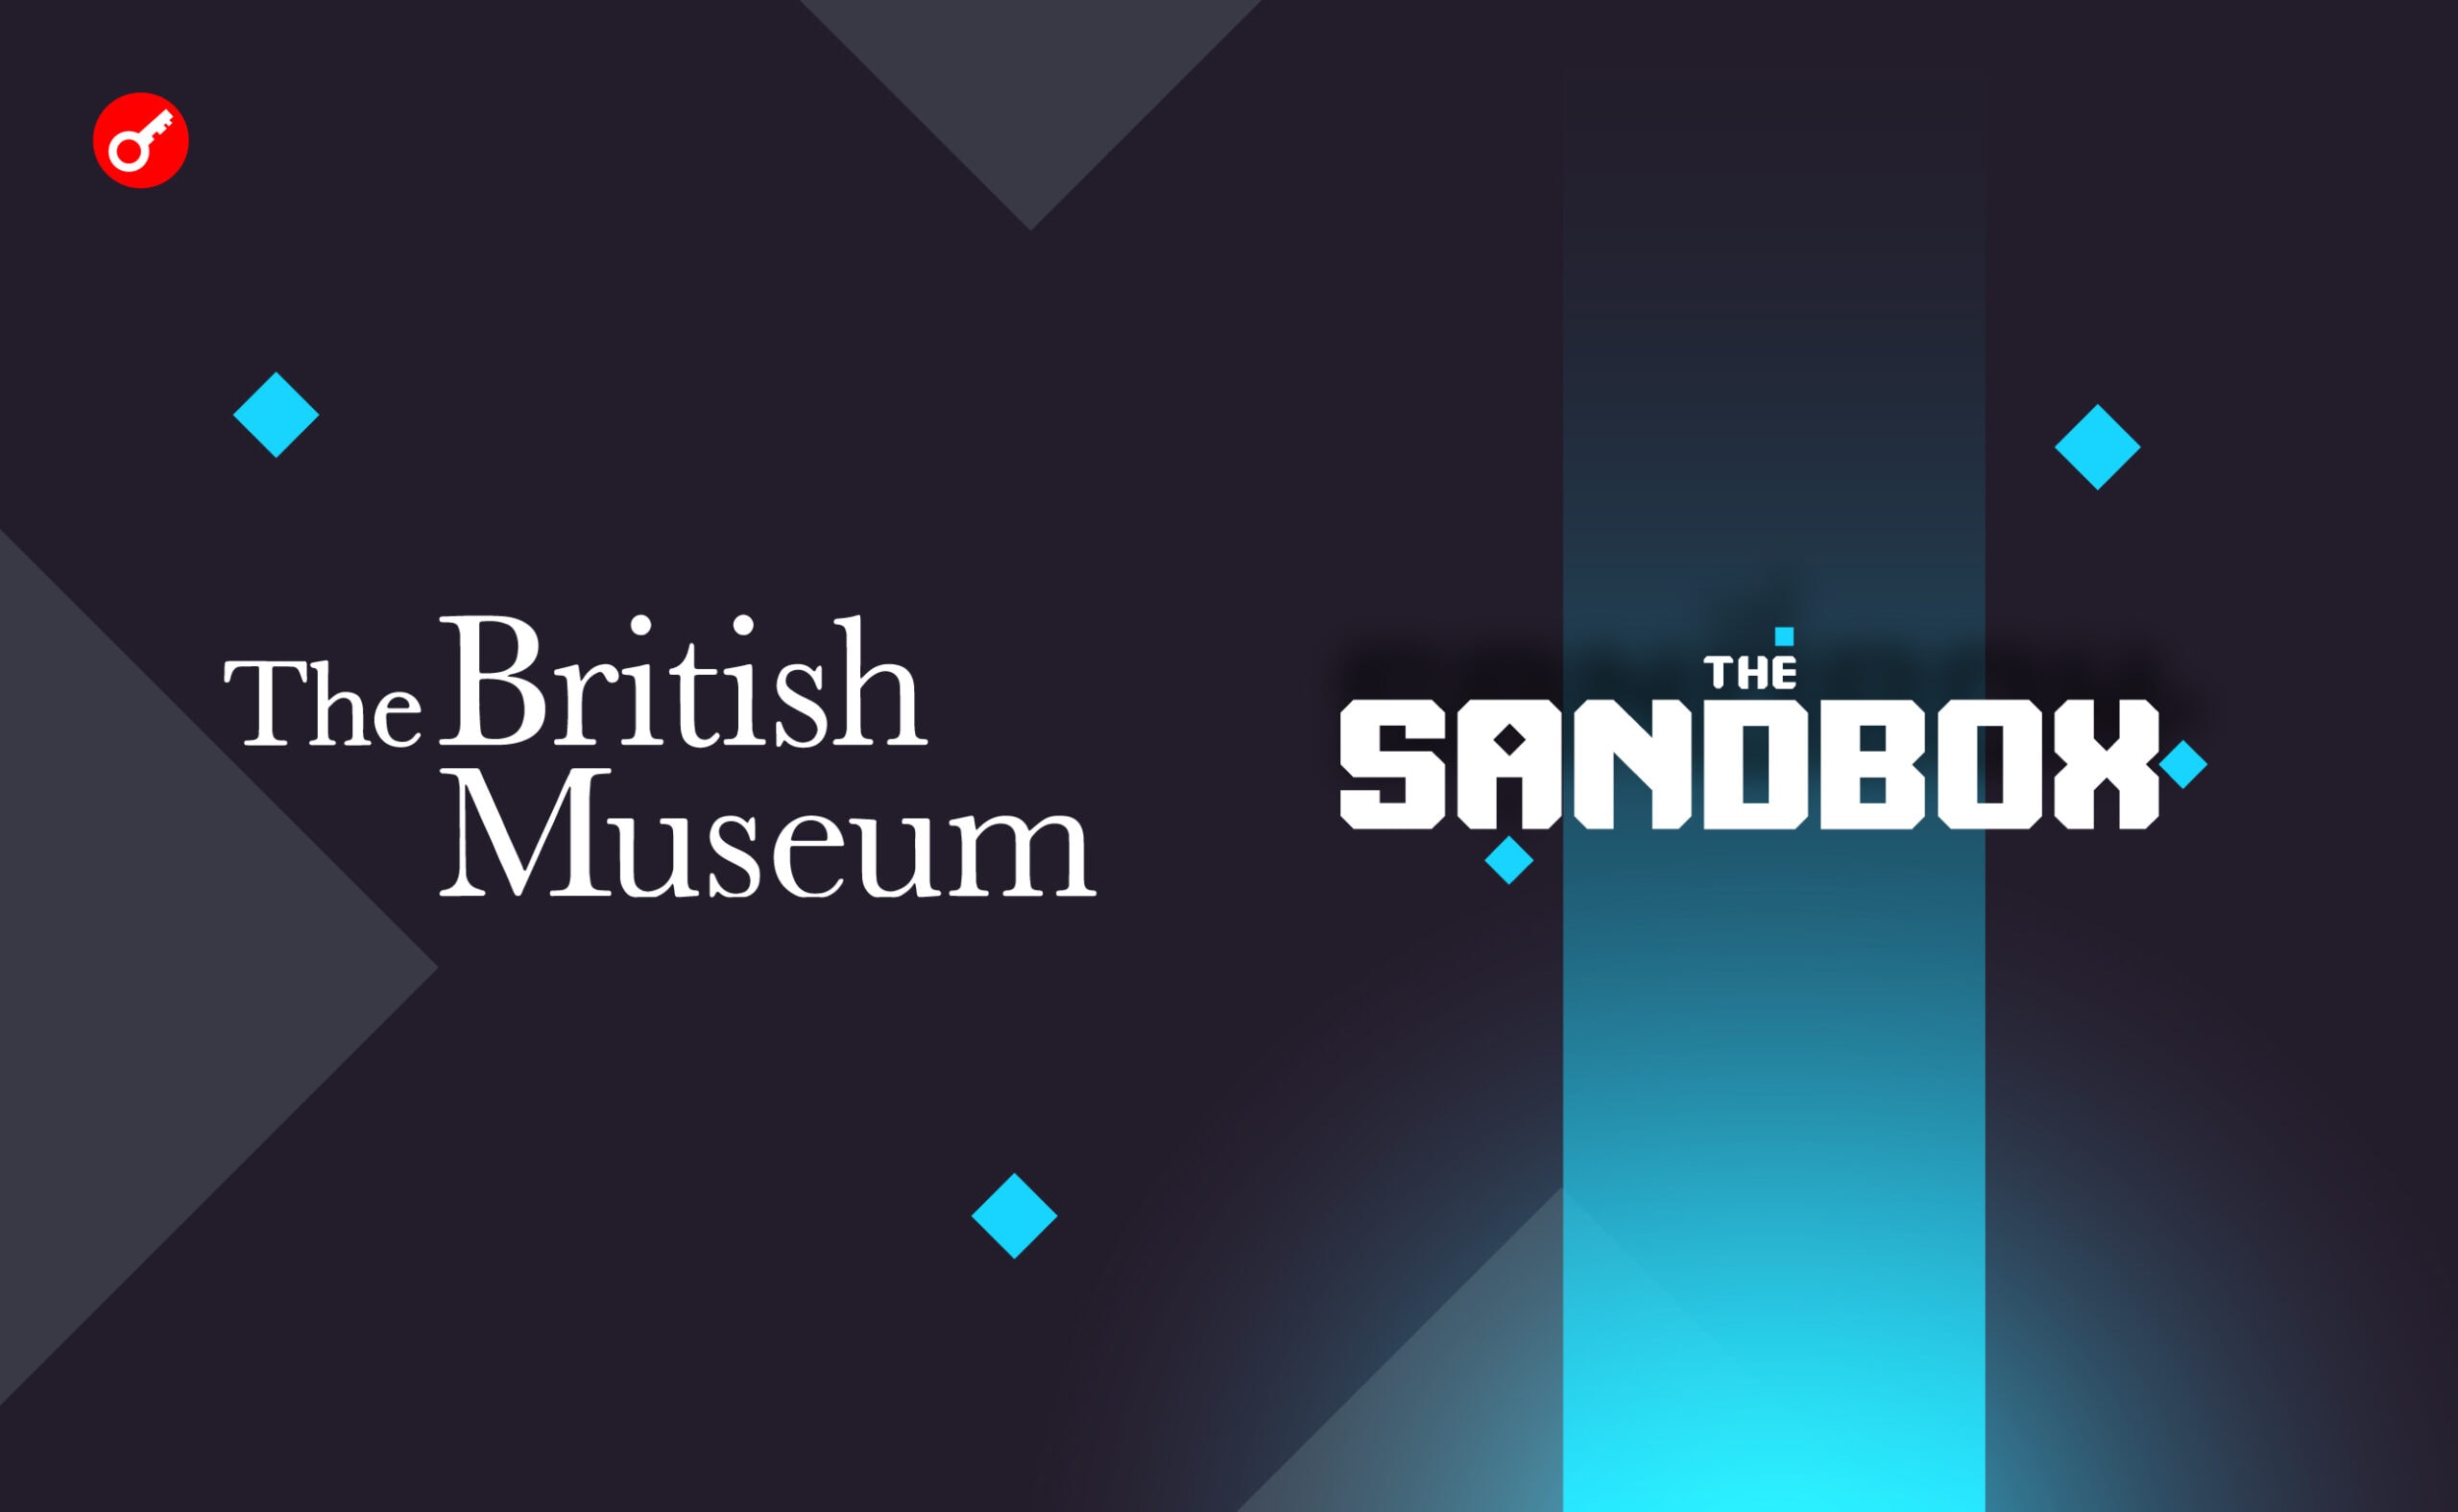 Британський музей відкриє представництво в метавсесвіті The Sandbox. Головний колаж новини.